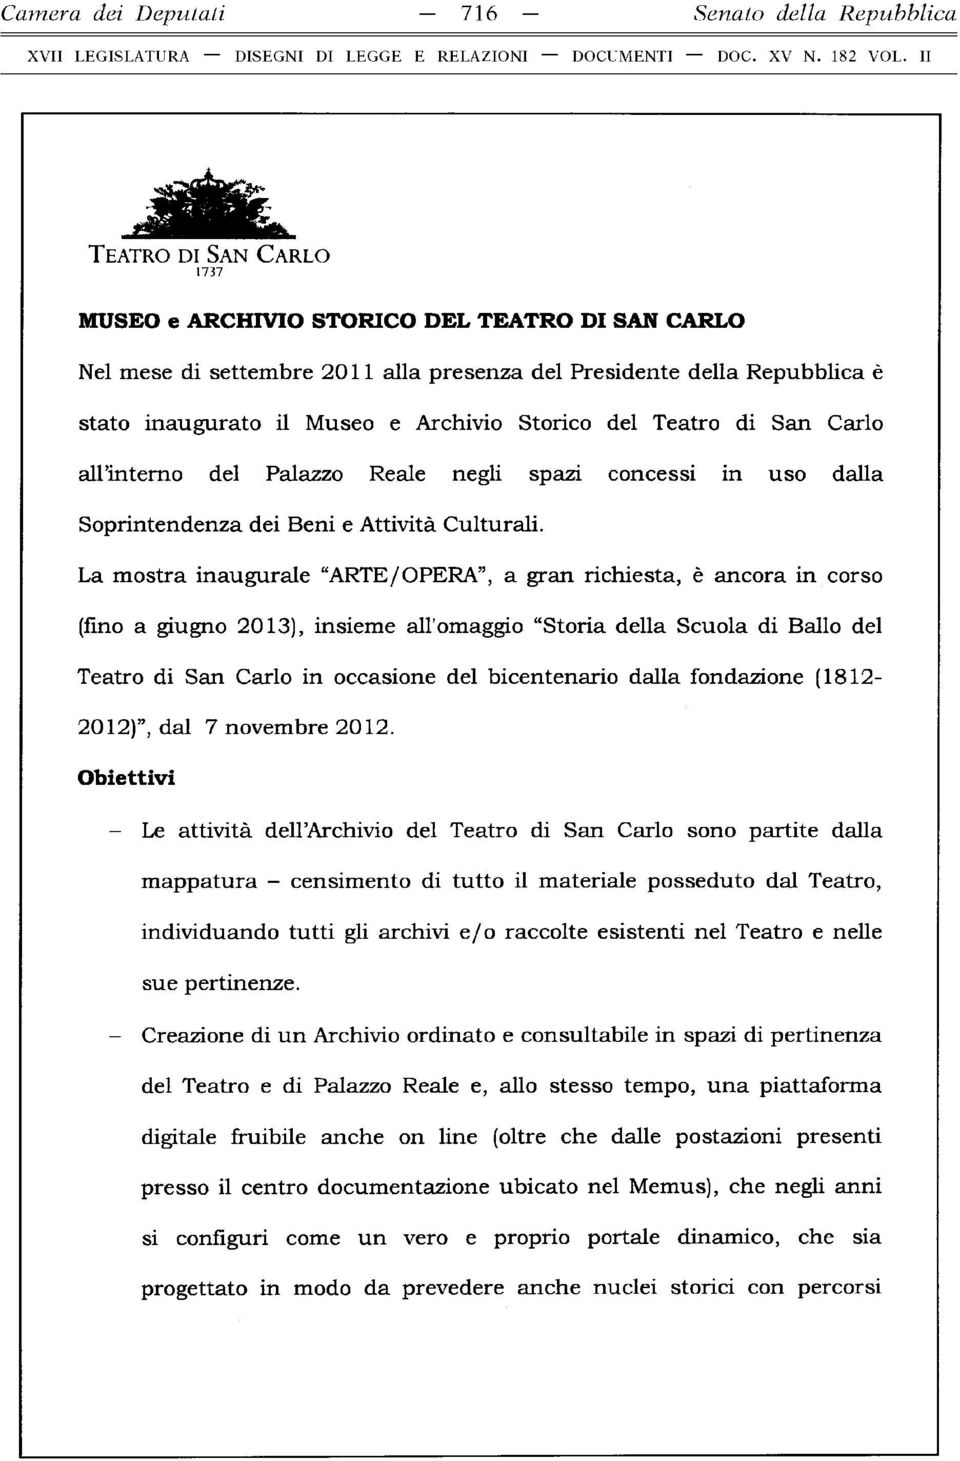 La m ostra inaugurale ARTE/OPERA, a gran richiesta, è ancora in corso (fino a giugno 2013), insieme all'omaggio Storia della Scuola di Ballo del Teatro di San Carlo in occasione del bicentenario